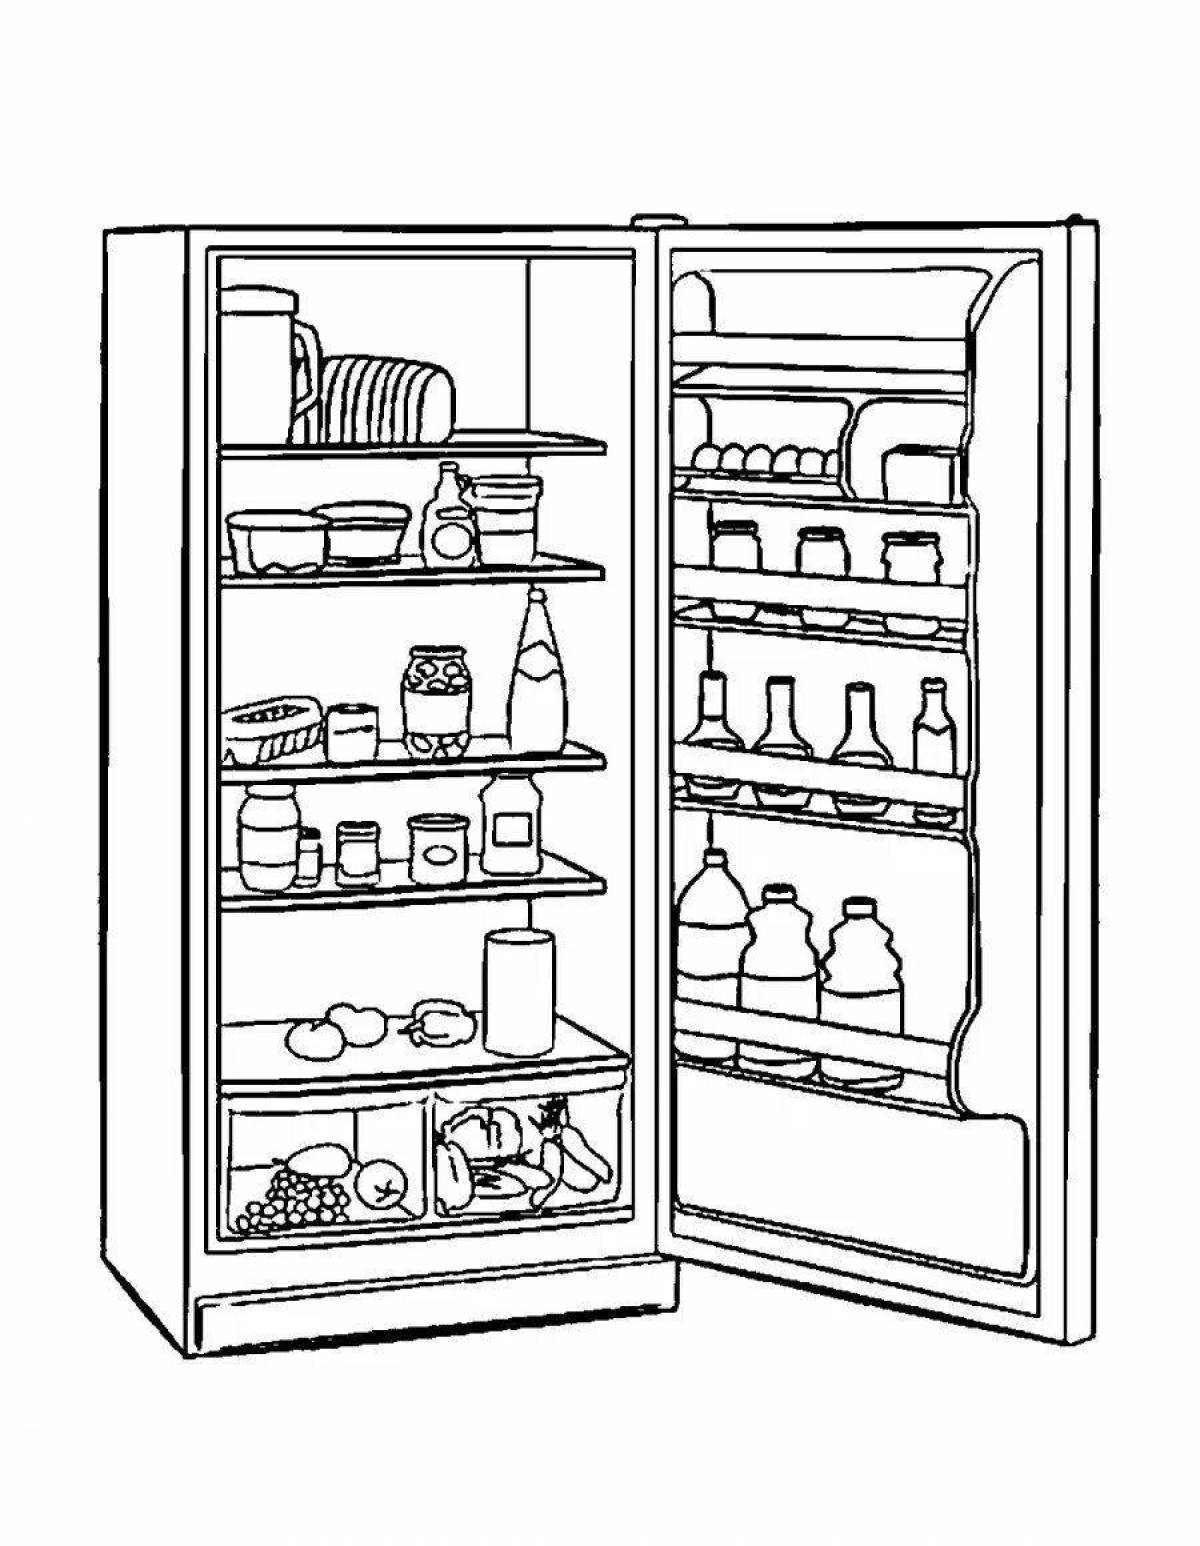 Food fridge #3